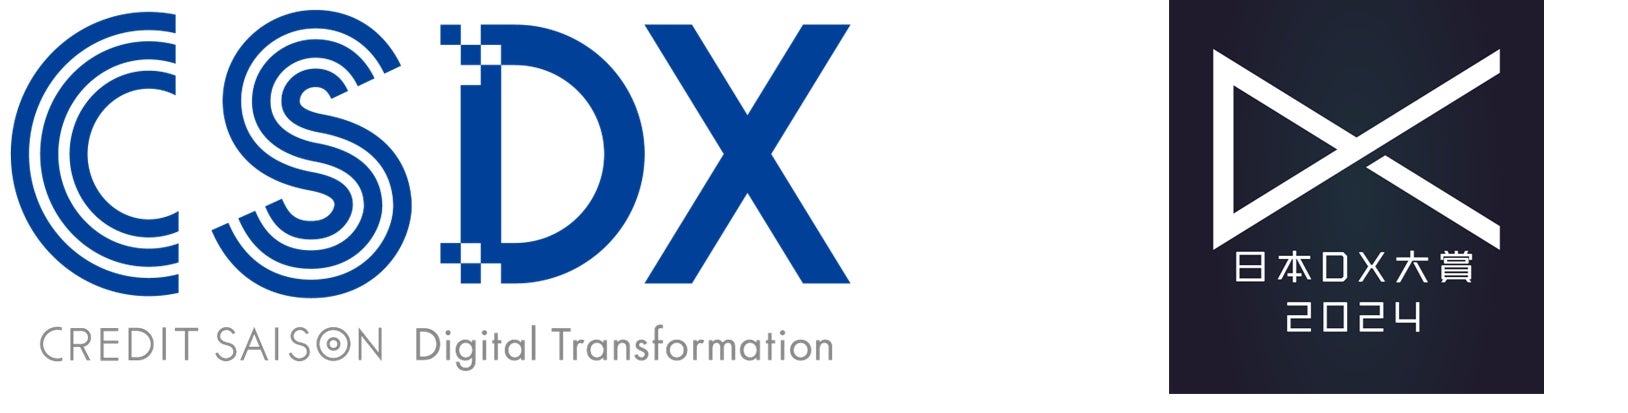 クレディセゾン、日本DX大賞「ビジネストランスフォーメーション（BX）部門 優秀賞」を受賞